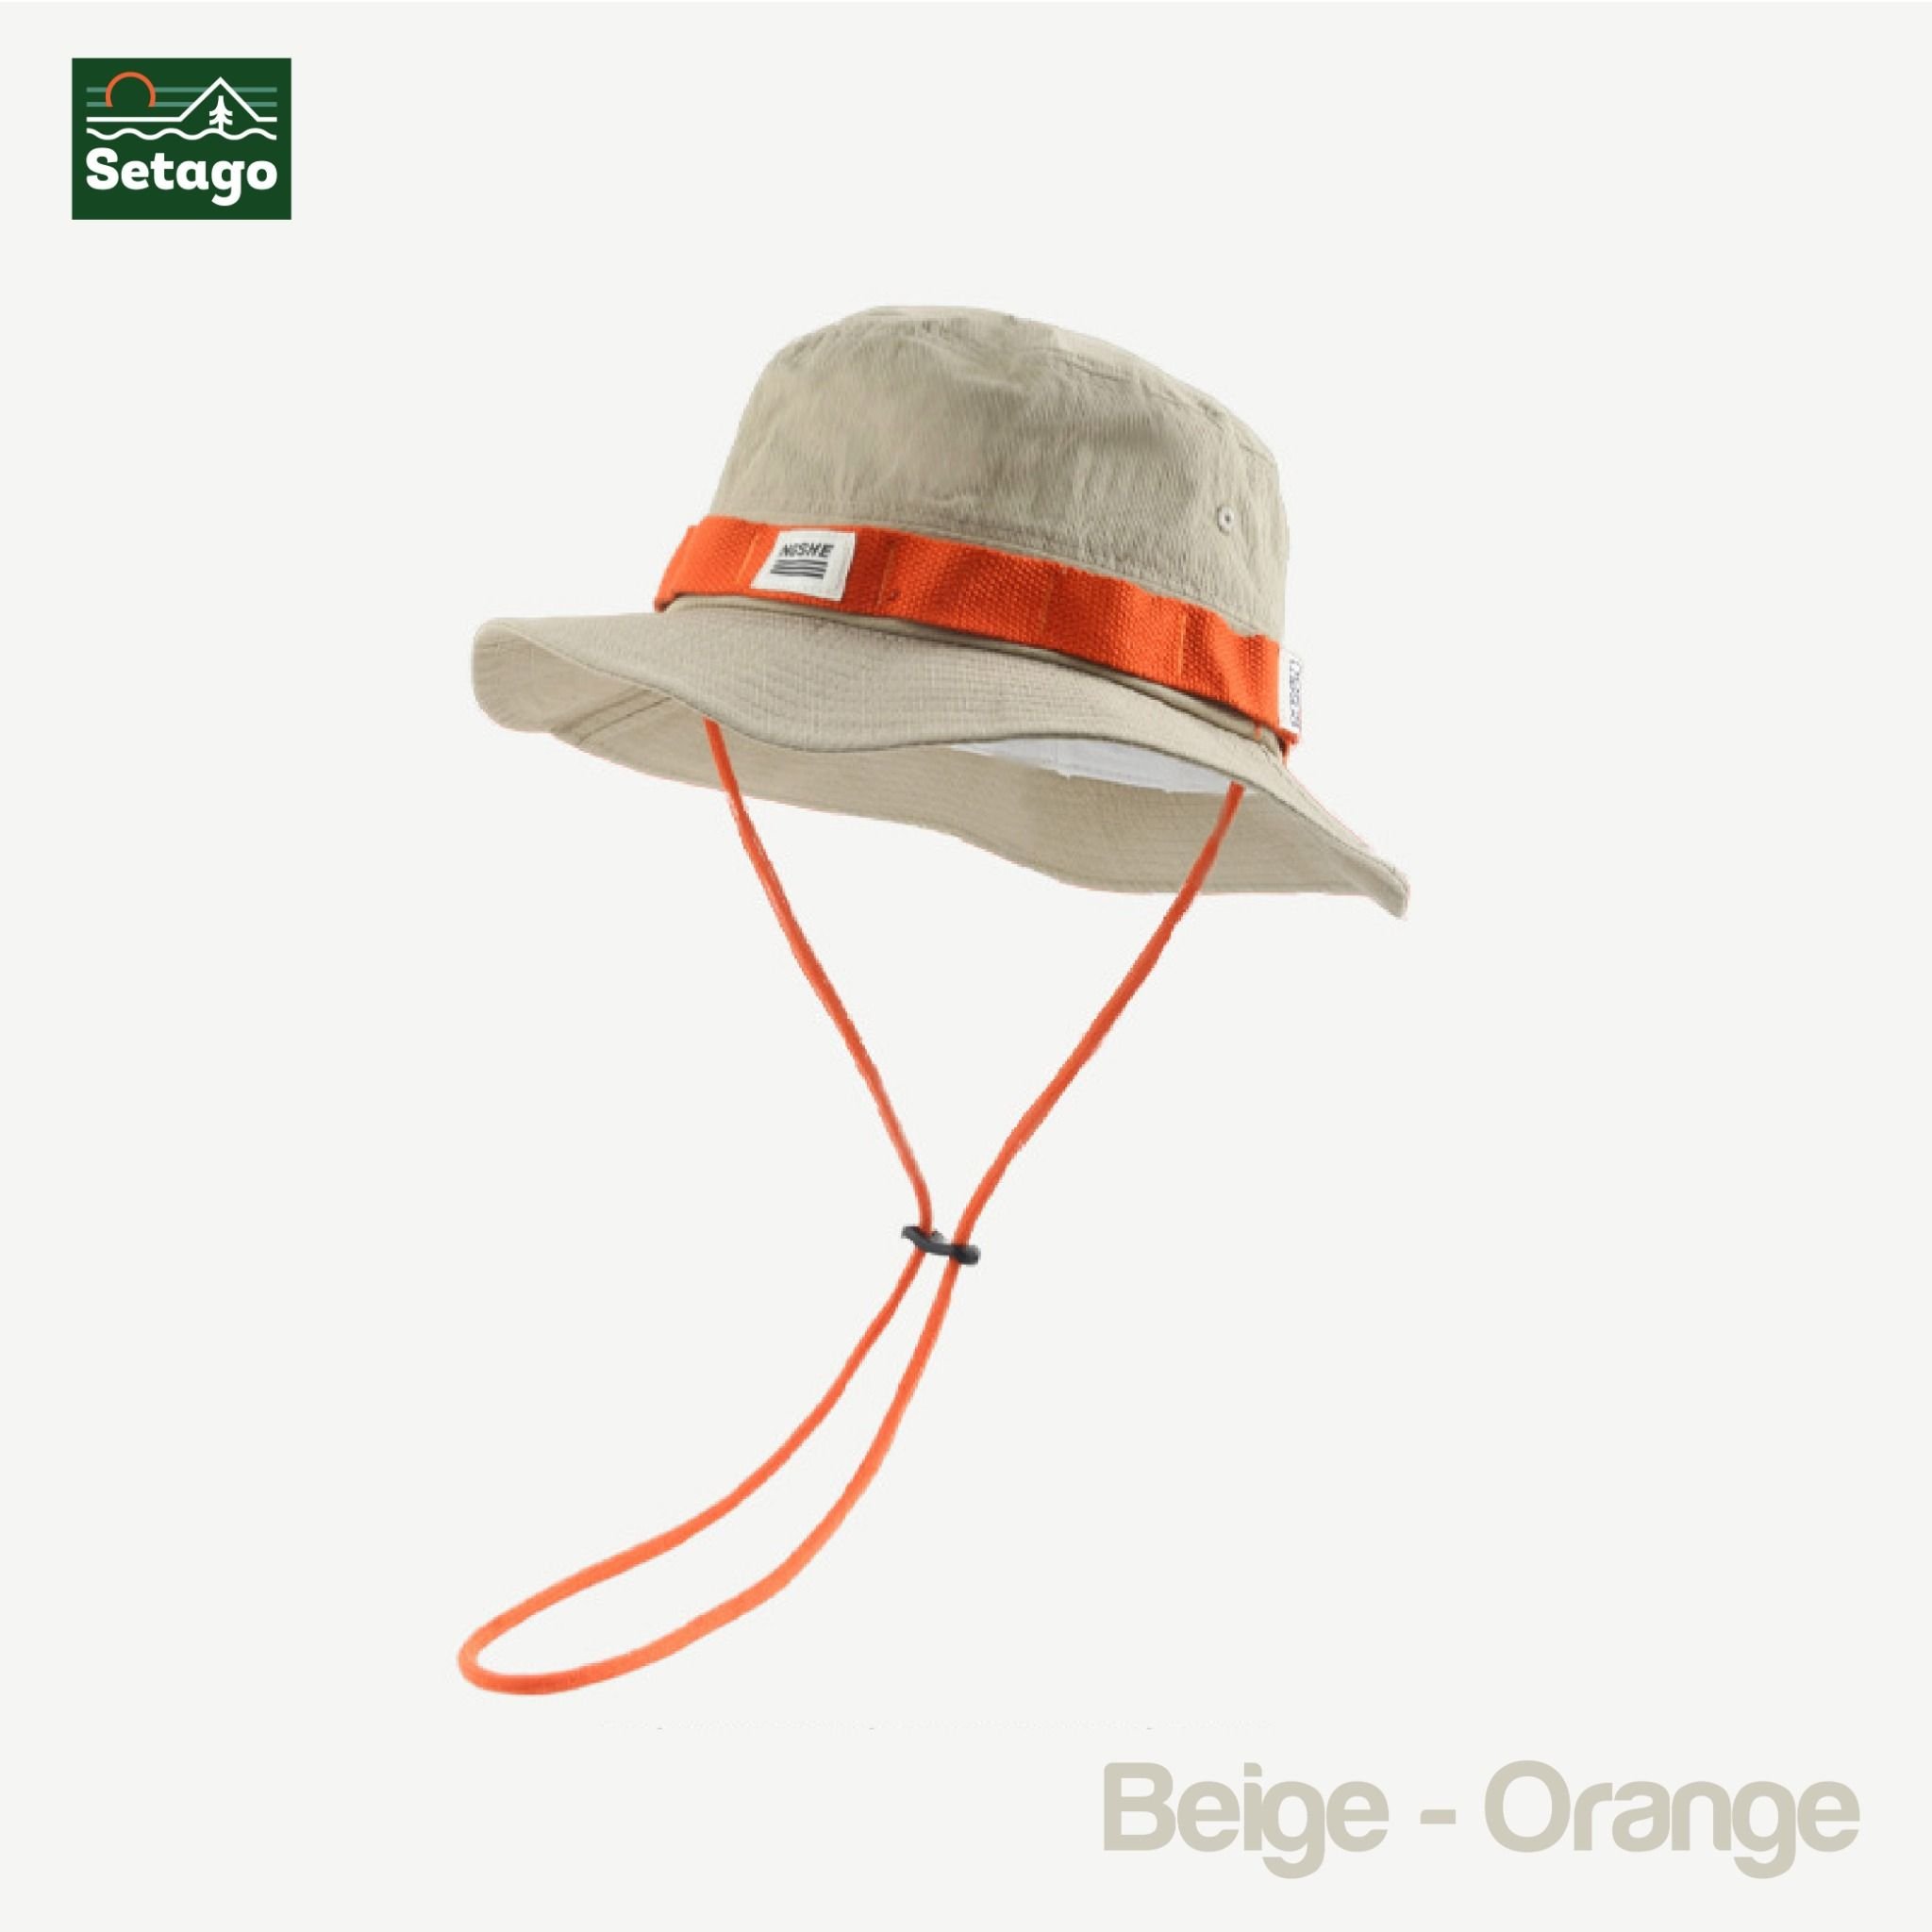  Mũ Band Bucket - Phù hợp cho các hoạt động leo núi, đi chơi, picnic, cắm trạị, dã ngoại 